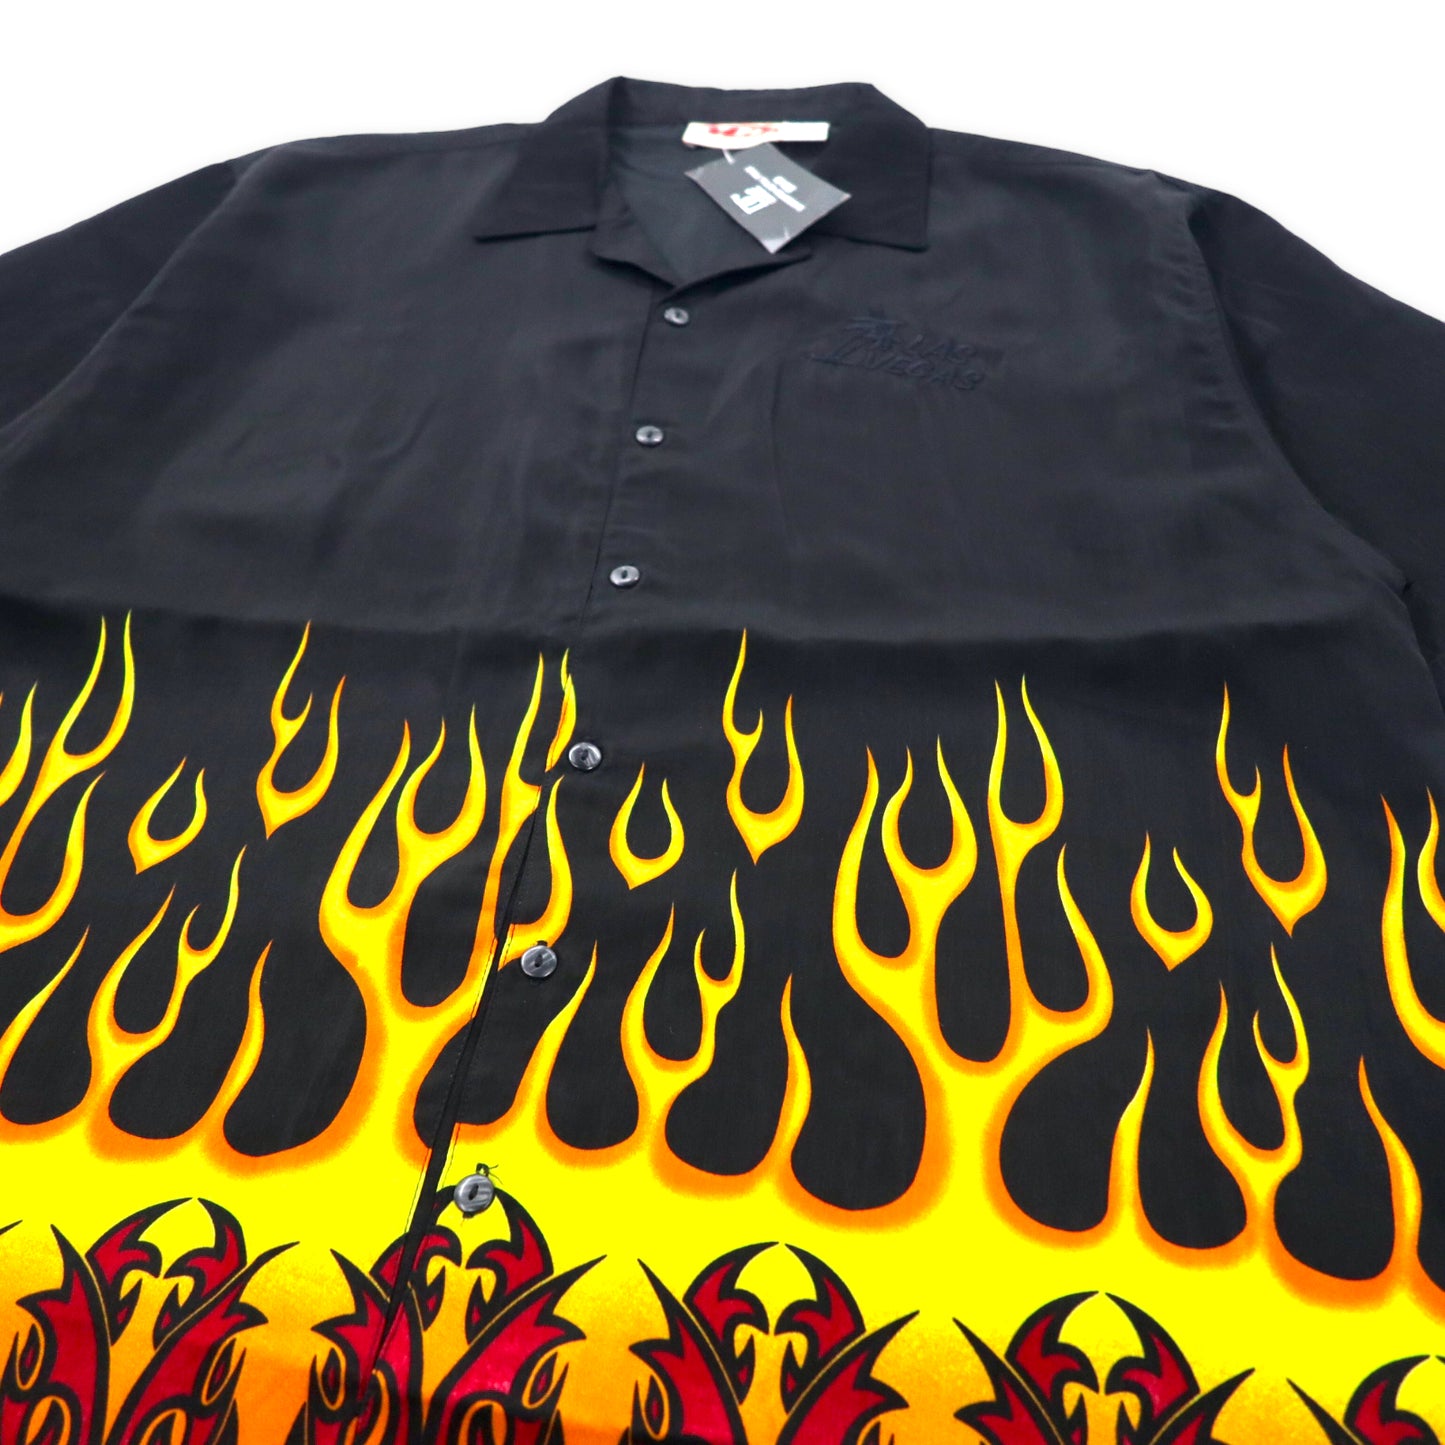 Malibu Dreams 00年代 ファイヤーパターン オープンカラーシャツ アロハシャツ XL ブラック ポリエステル LAS VEGAS 刺繍 ビッグサイズ 未使用品